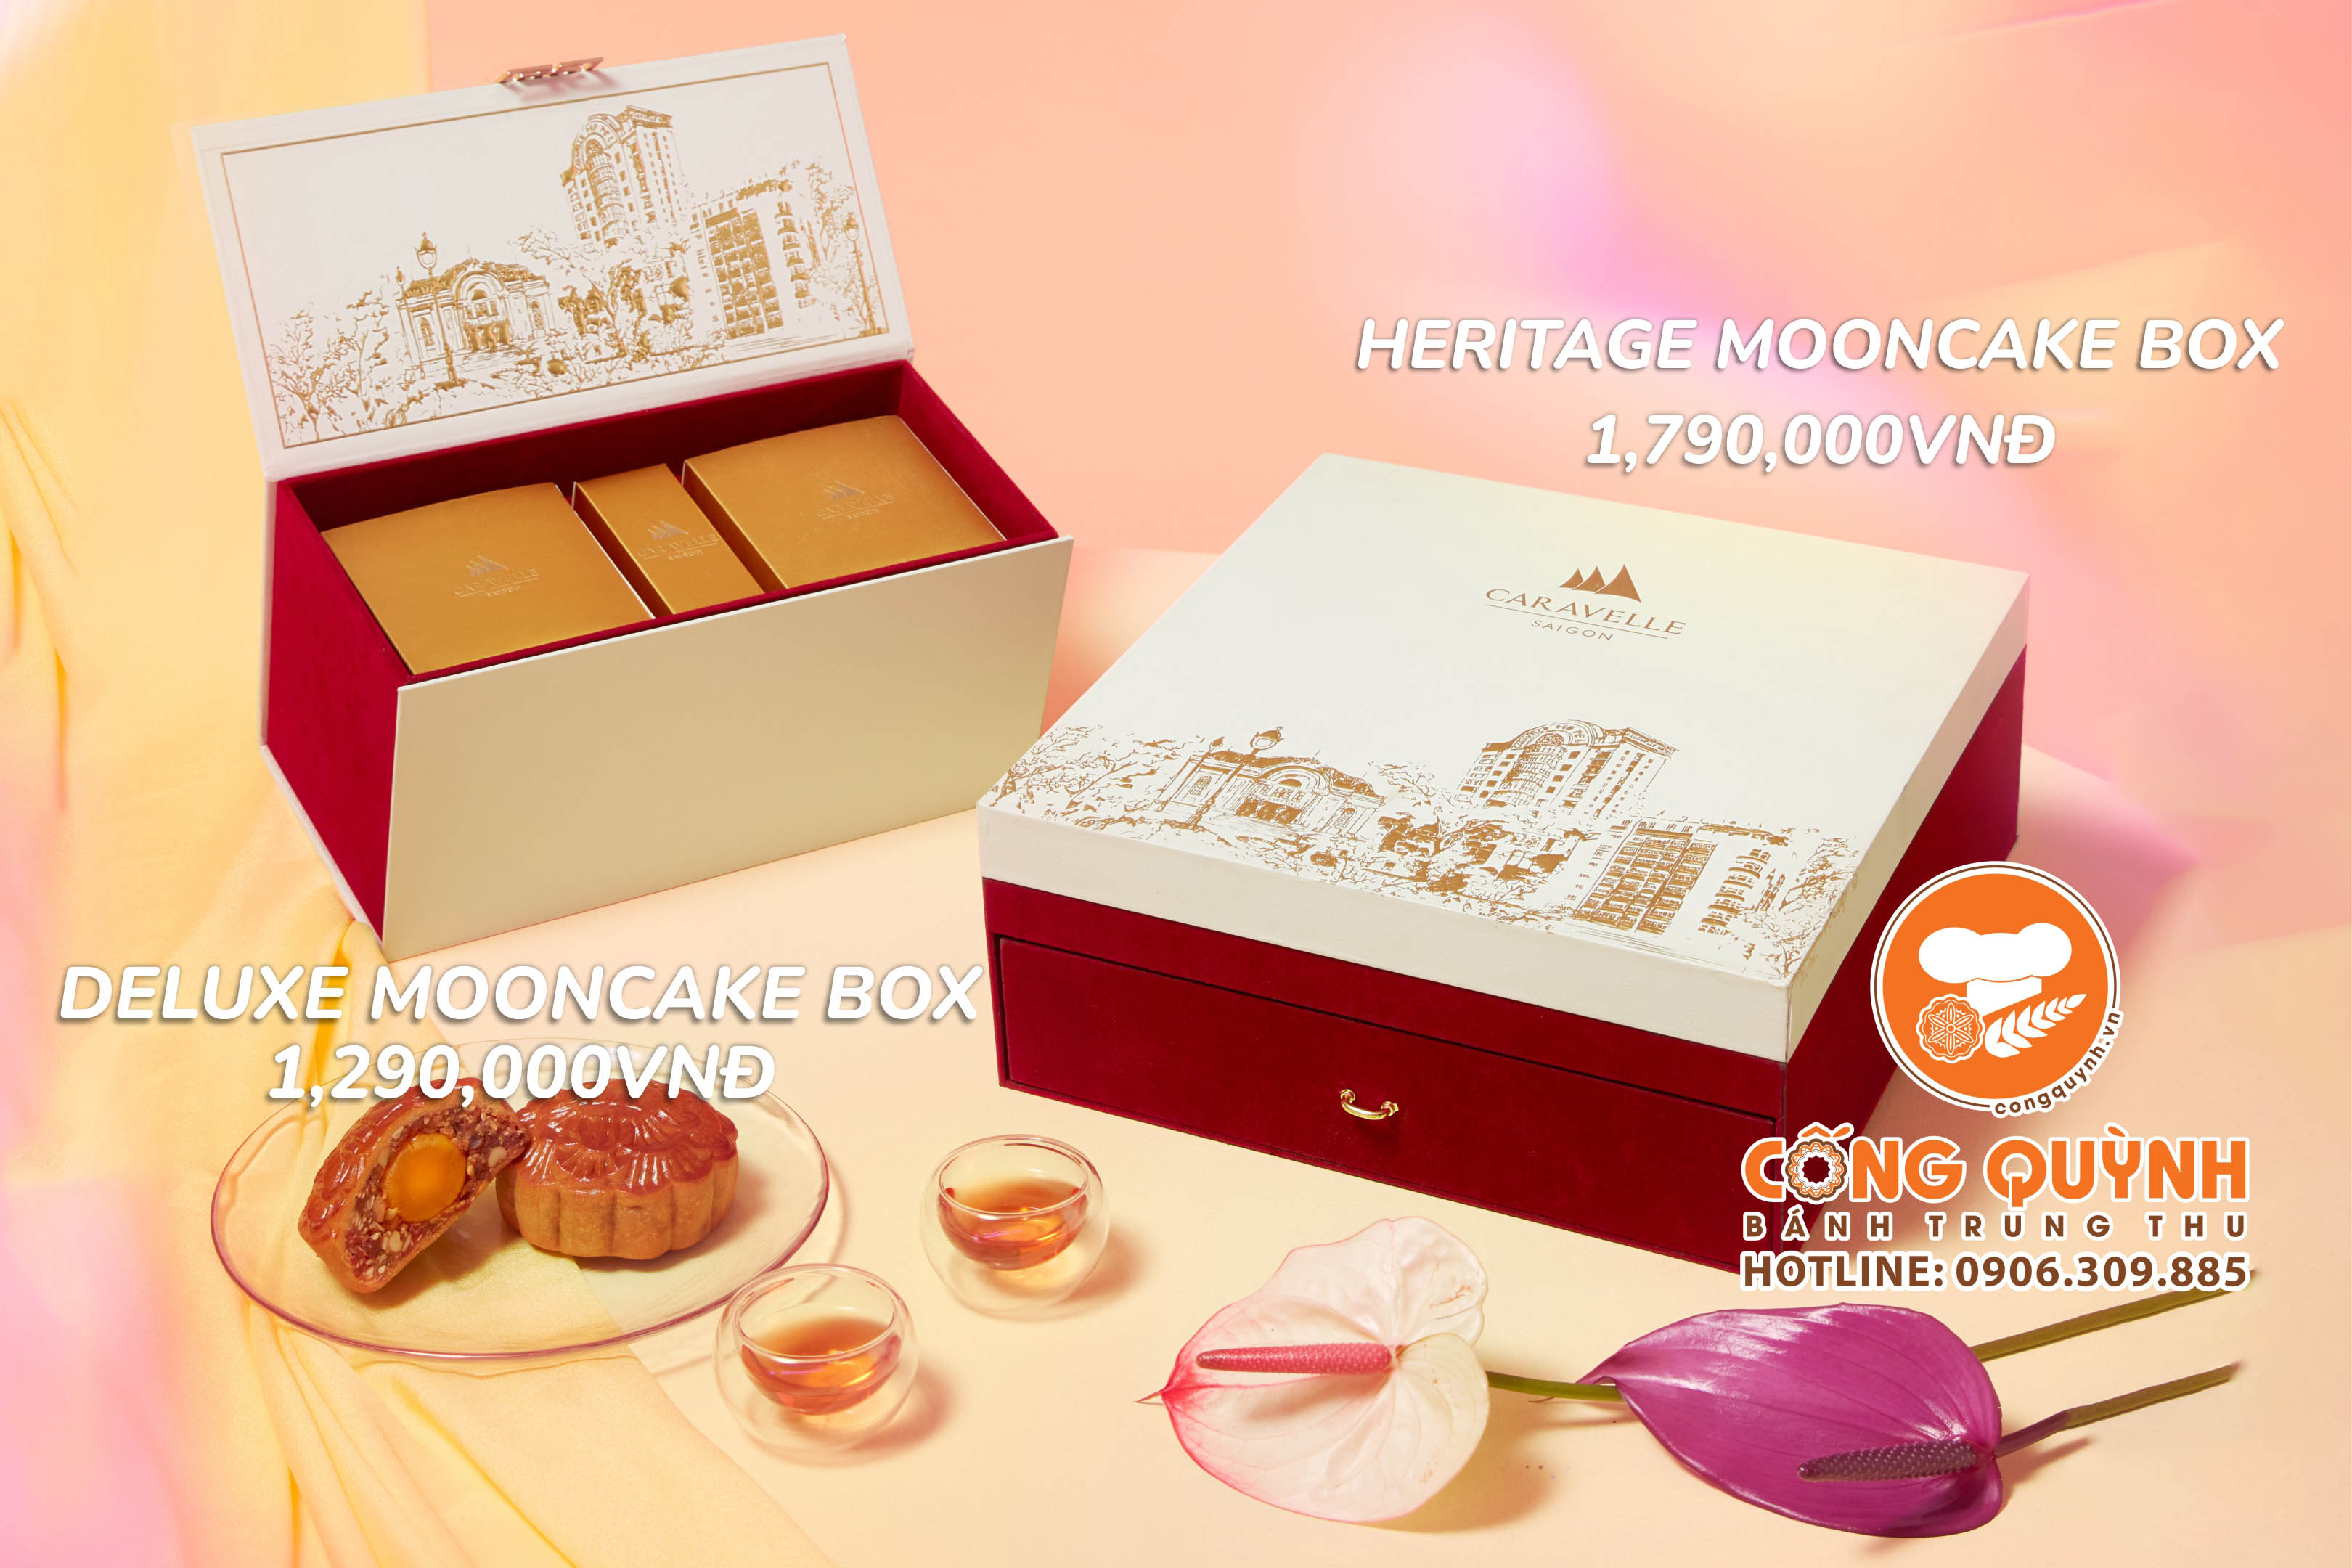 Bánh trung thu khách sạn năm sao Caravelle - Combo Heritage Mooncake Box